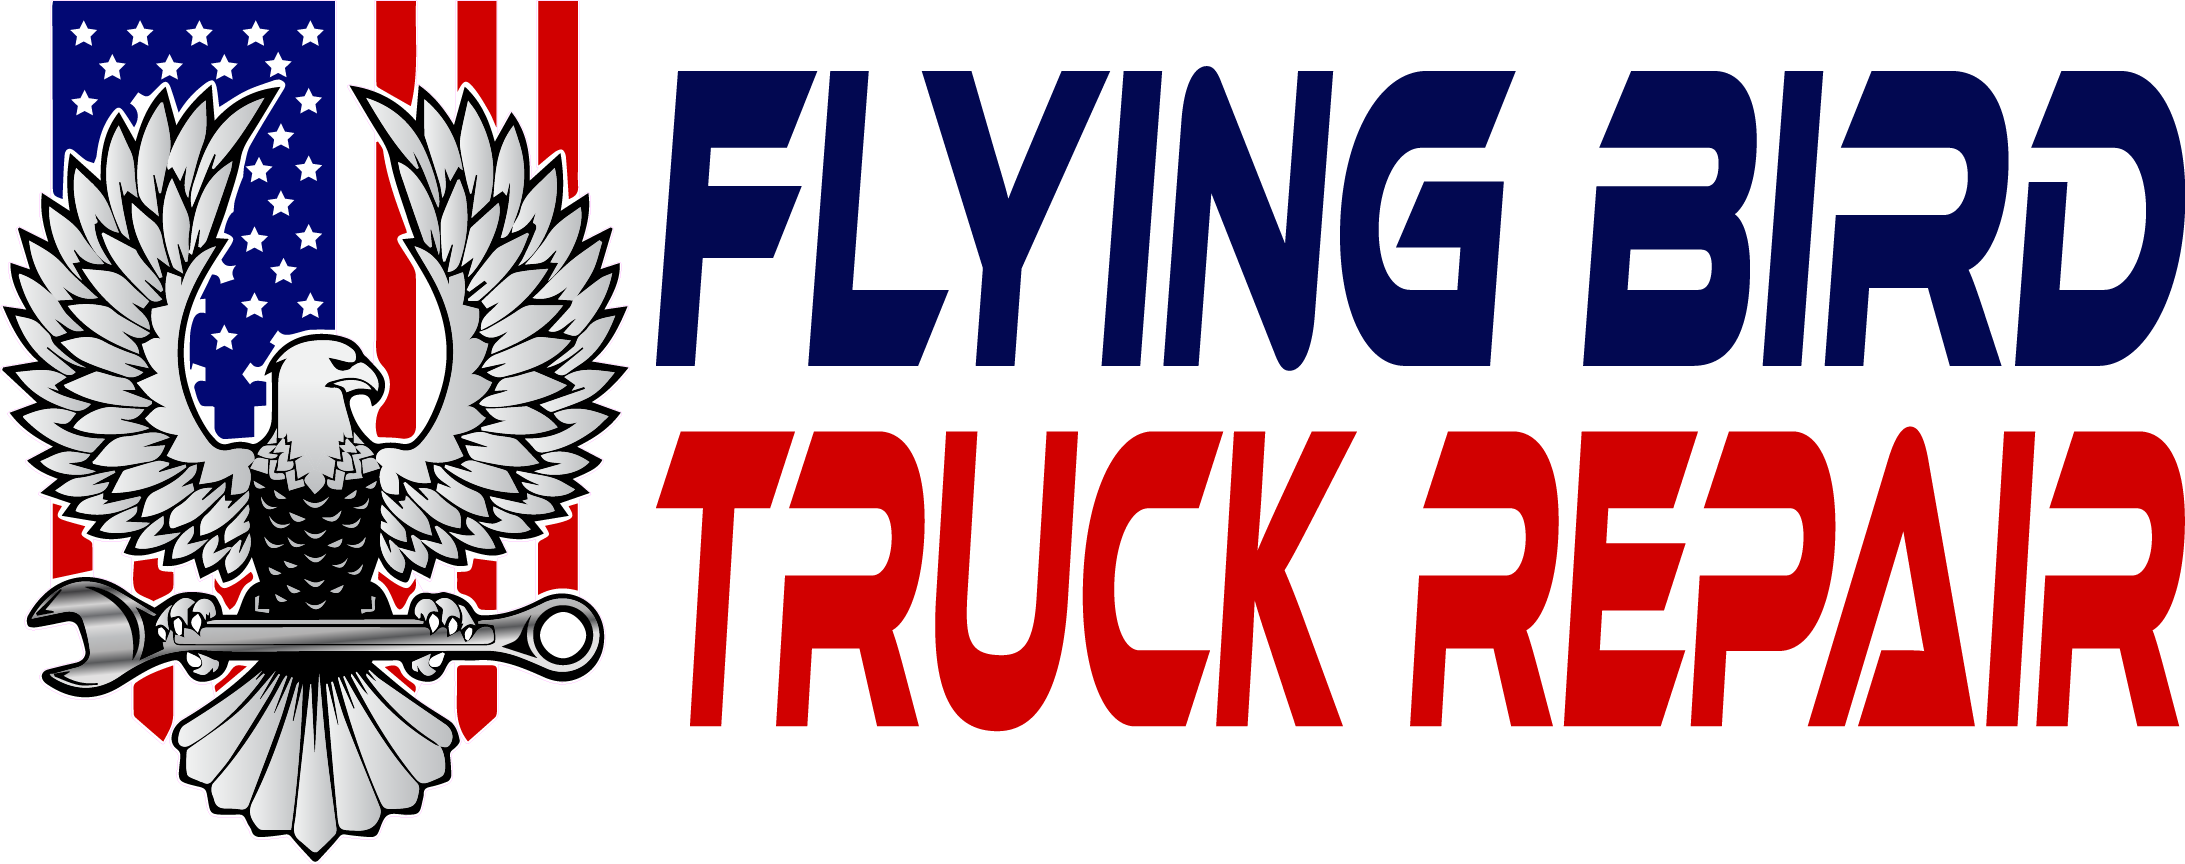 Expert Commercial Truck Maintenance Services: Flying Bird Truck Repair